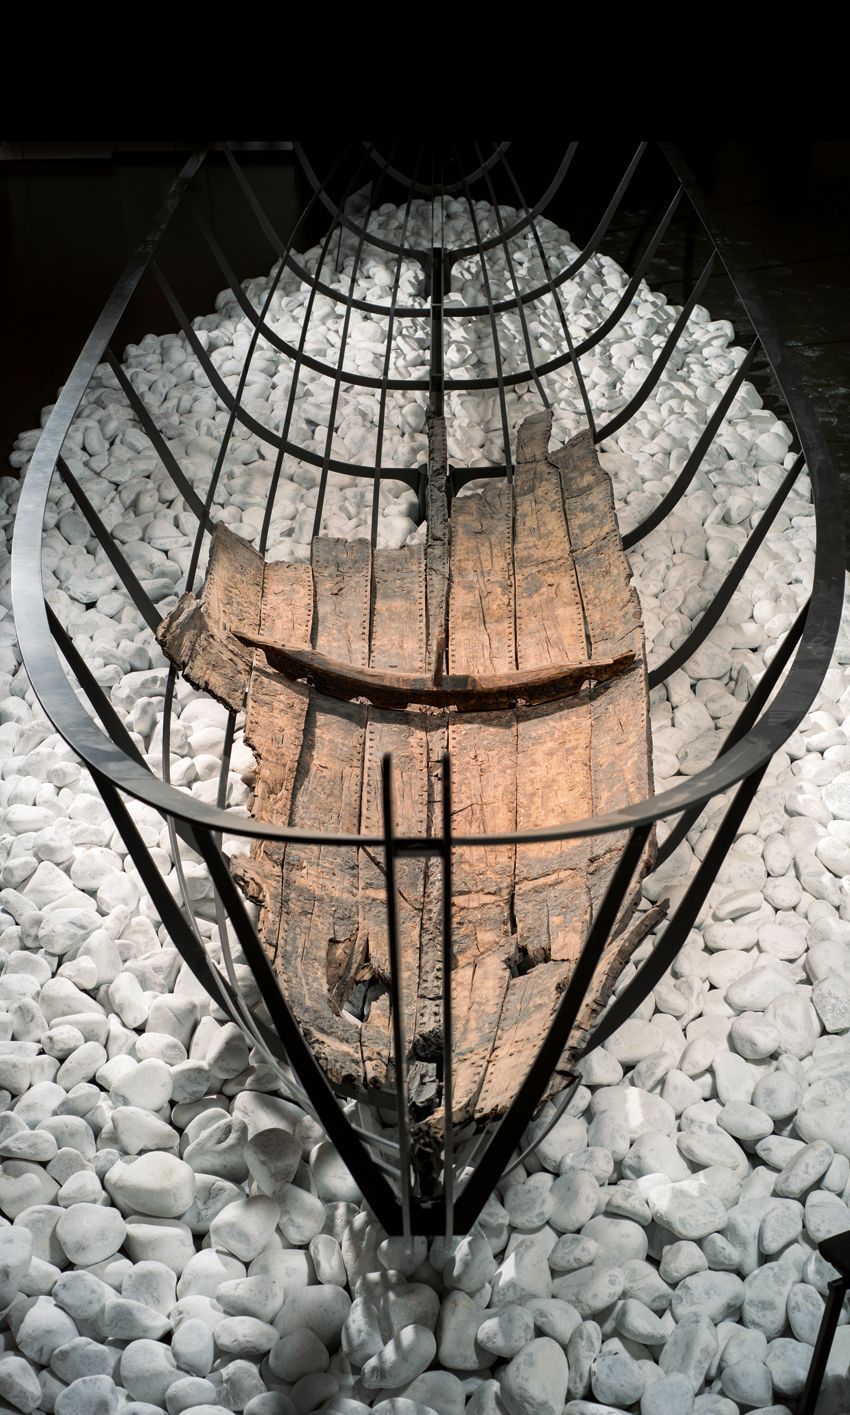 2. Znovuzrození antické rybářské lodě